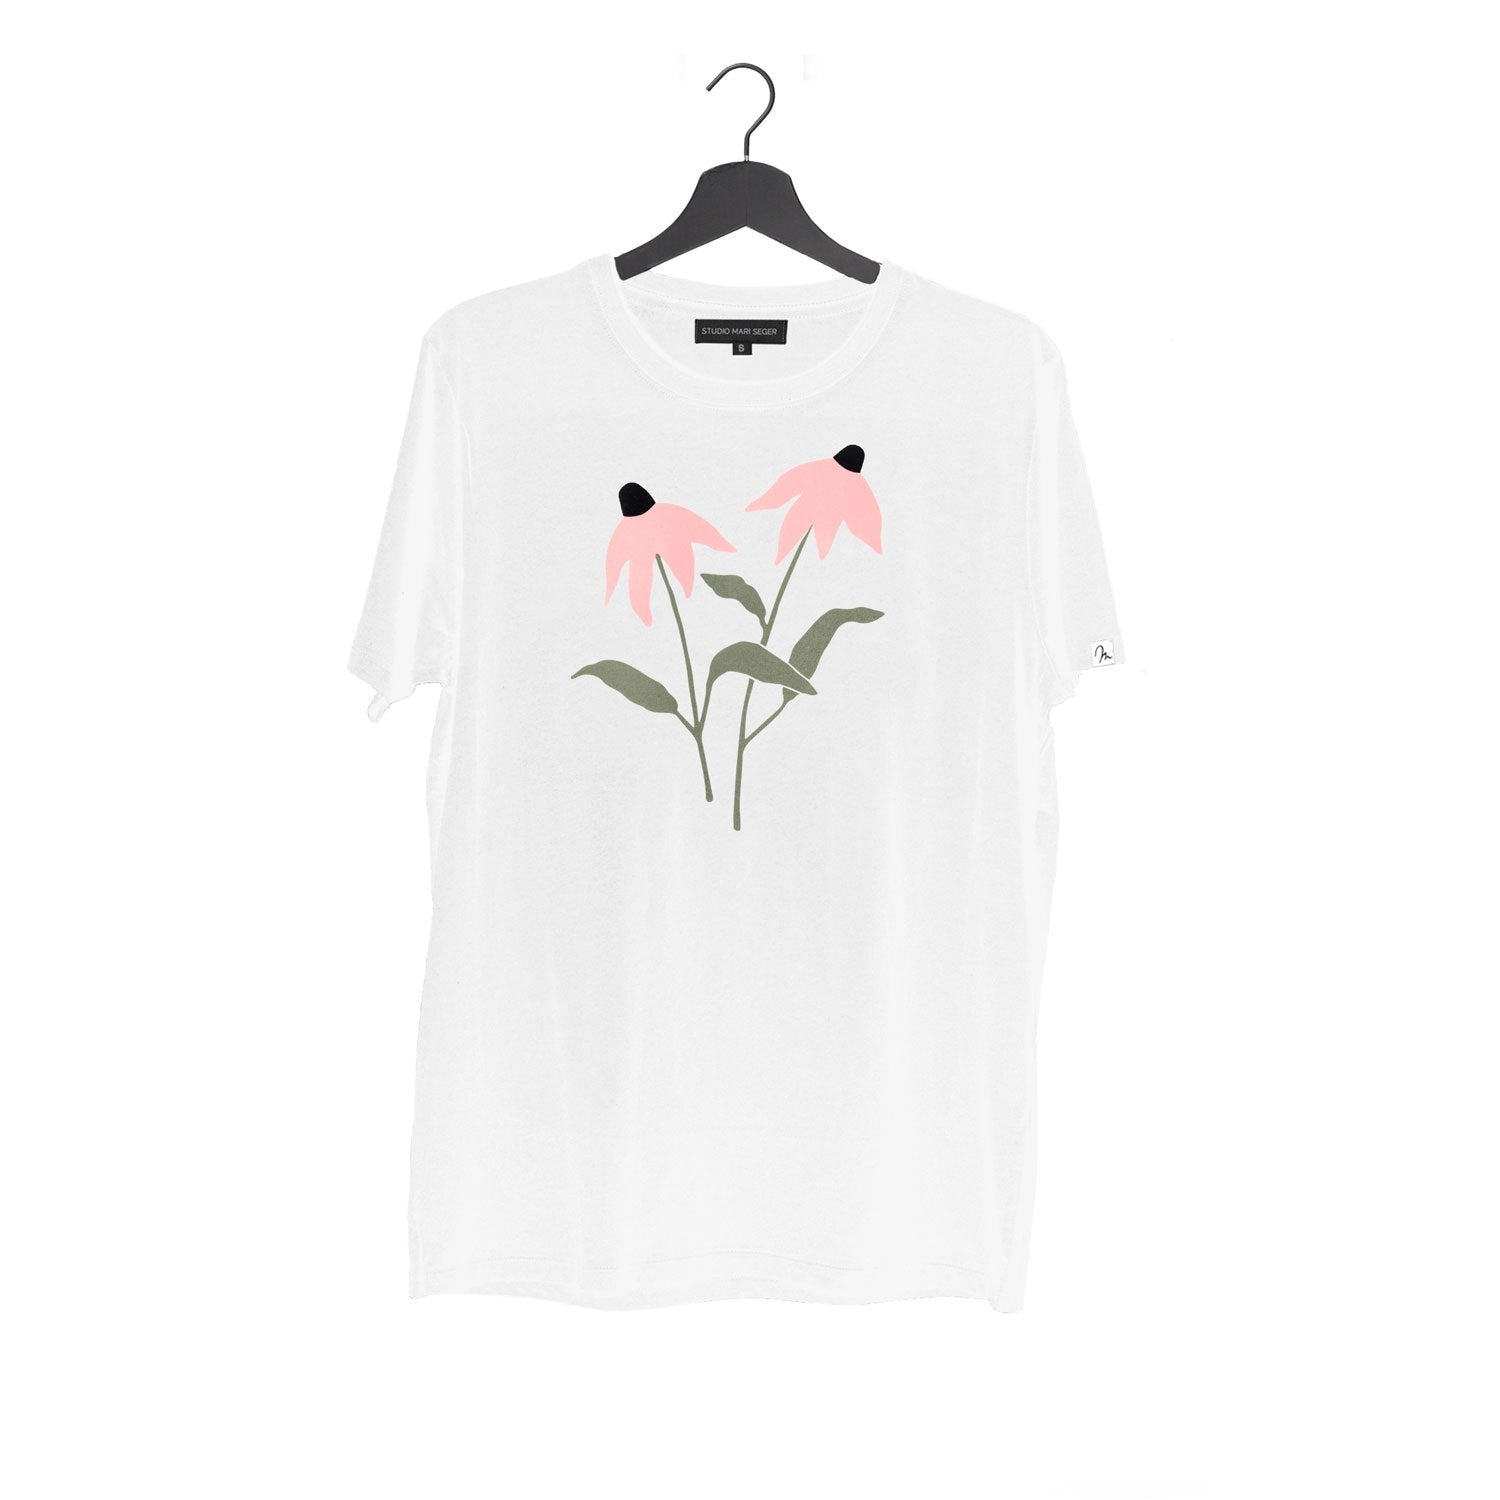 BŌSHI t-shirt, pink